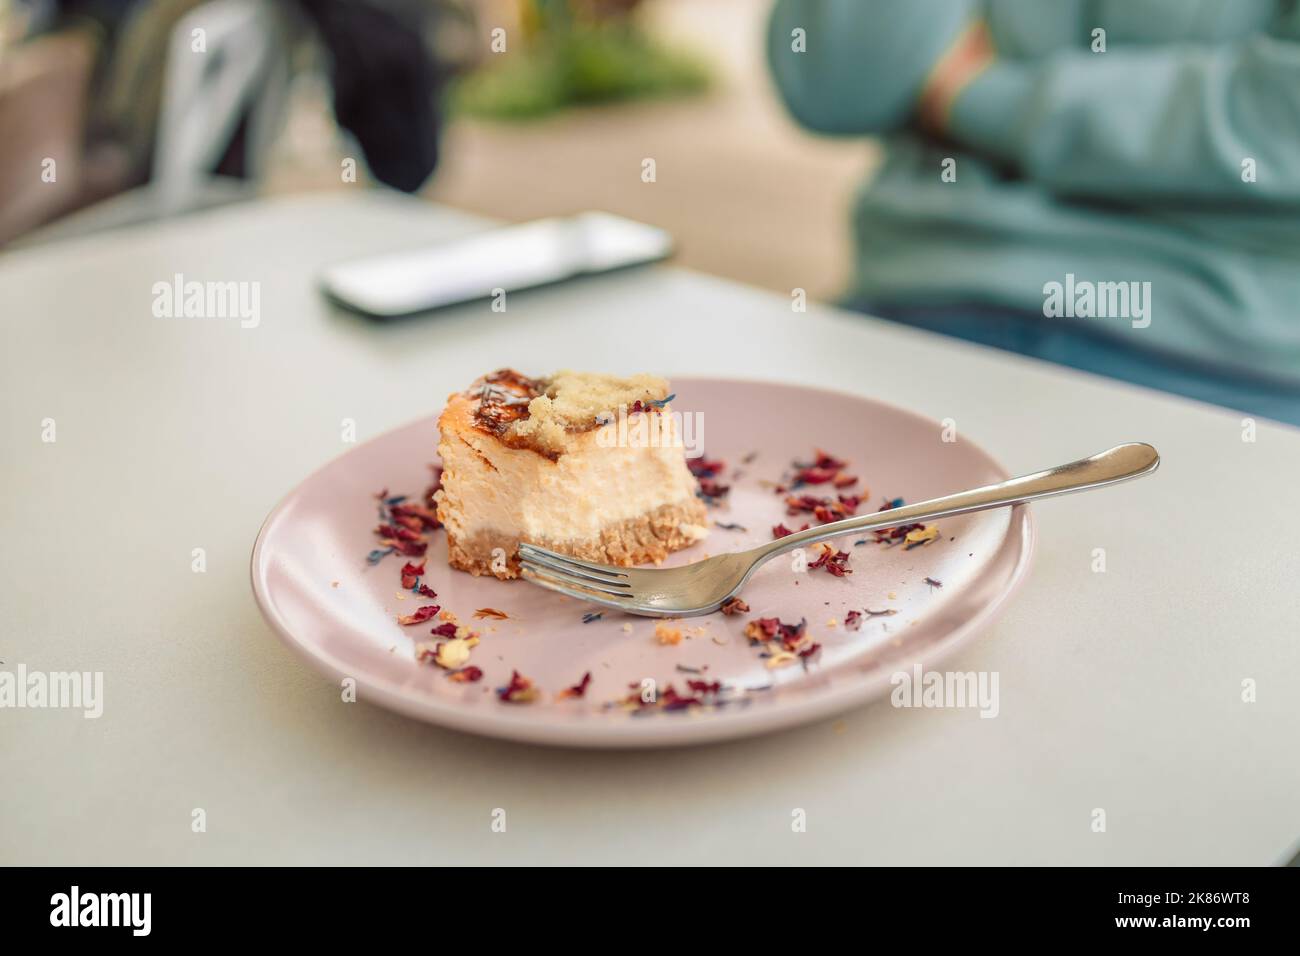 Mangiare cheesecake. Prendere un boccone di cheesecake con forchetta, colazione in luogo pubblico Foto Stock